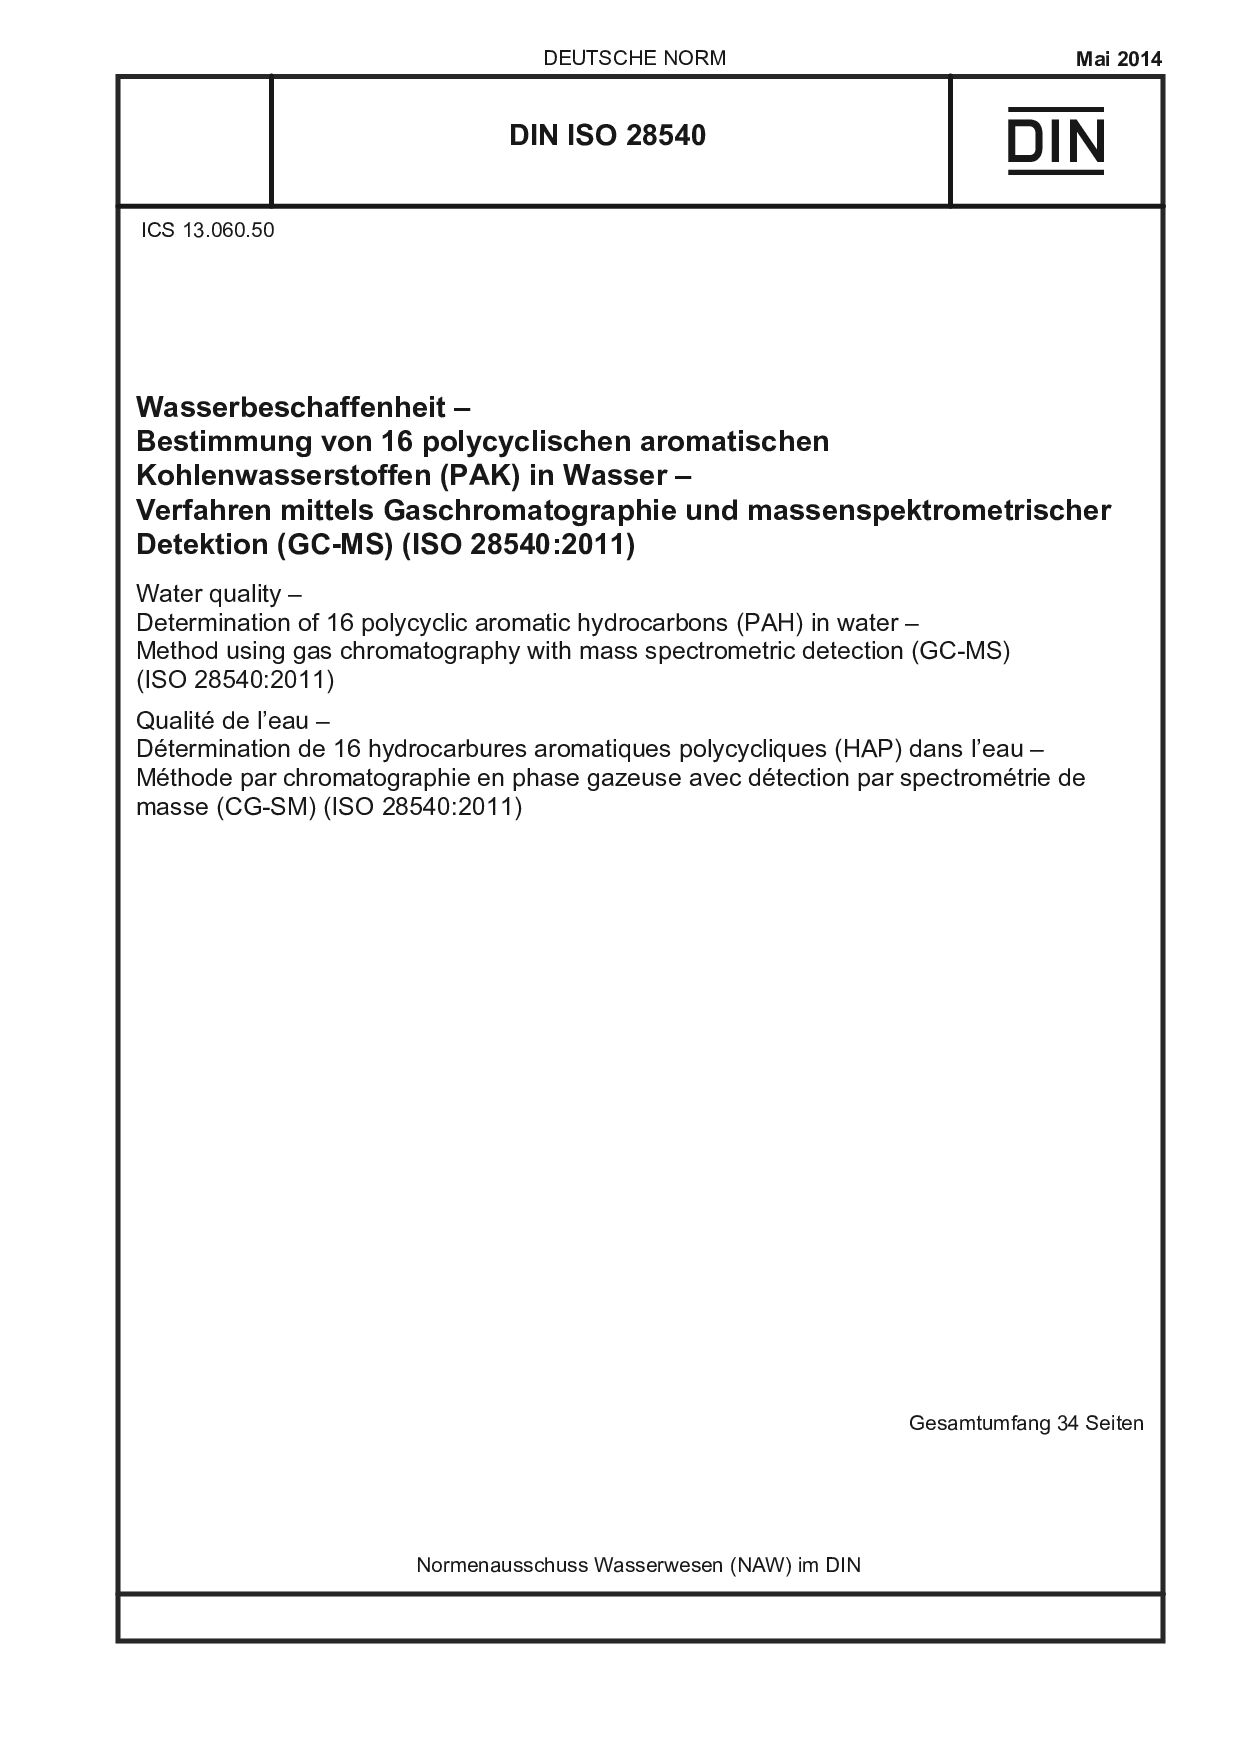 DIN ISO 28540:2014封面图